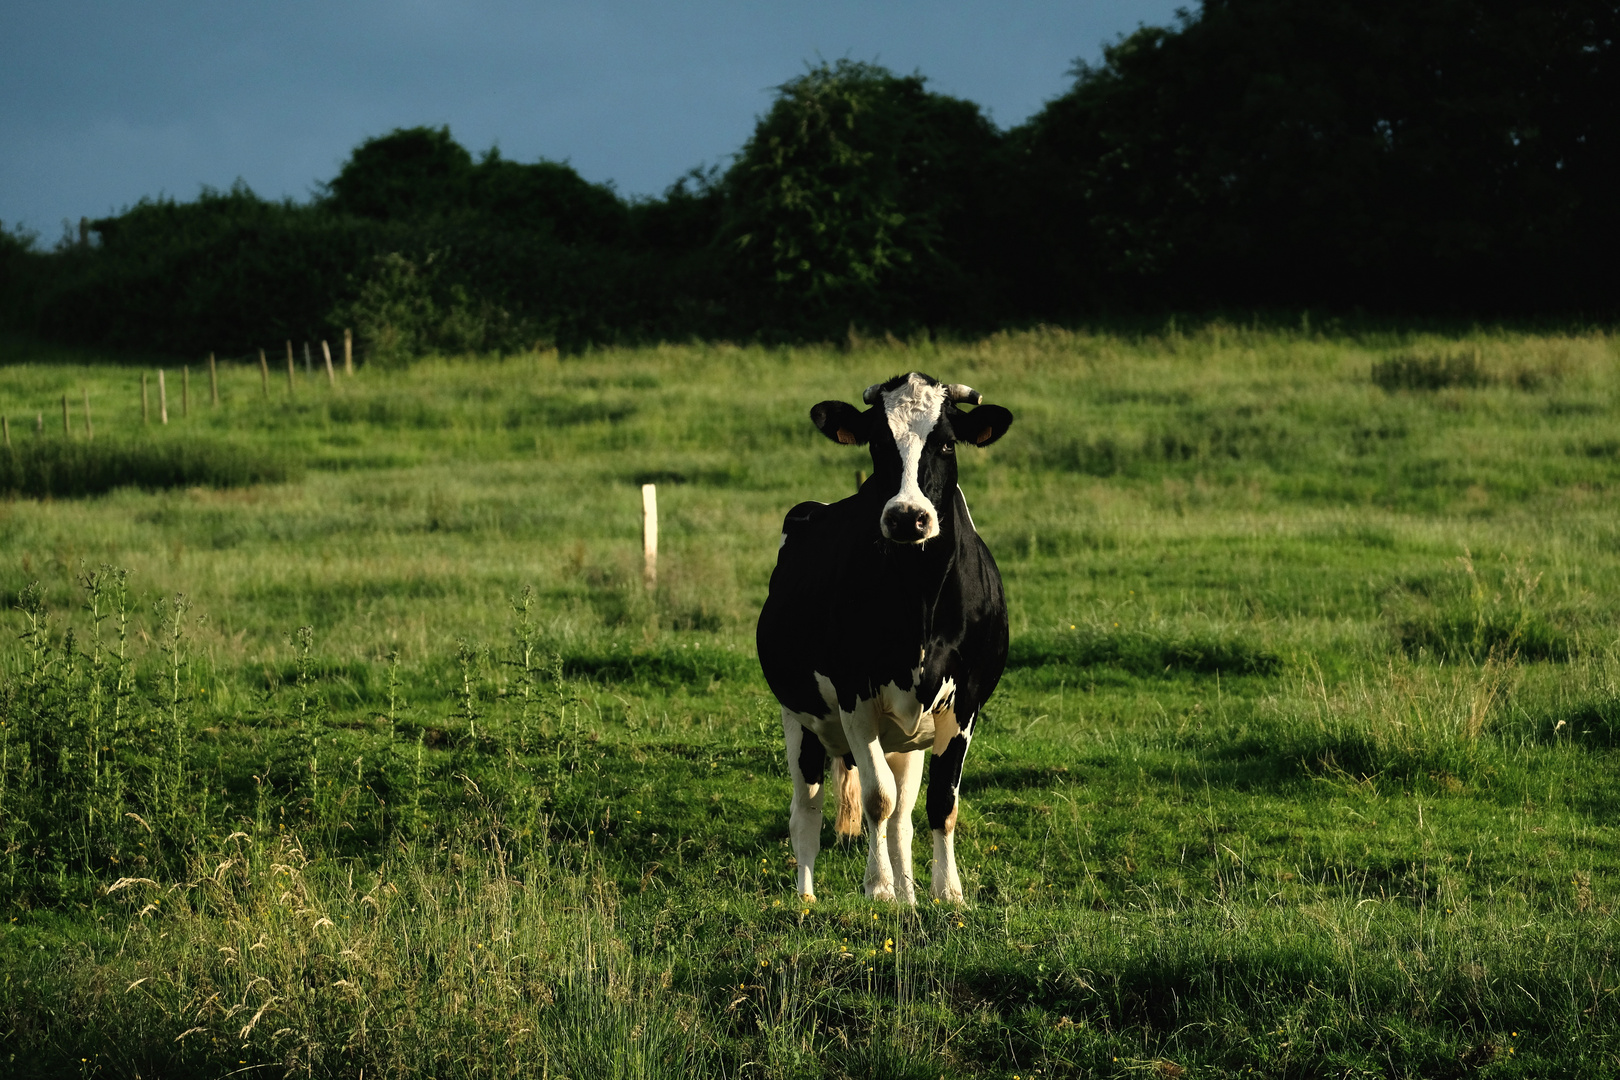  la vache normande curieuse et observatrice 